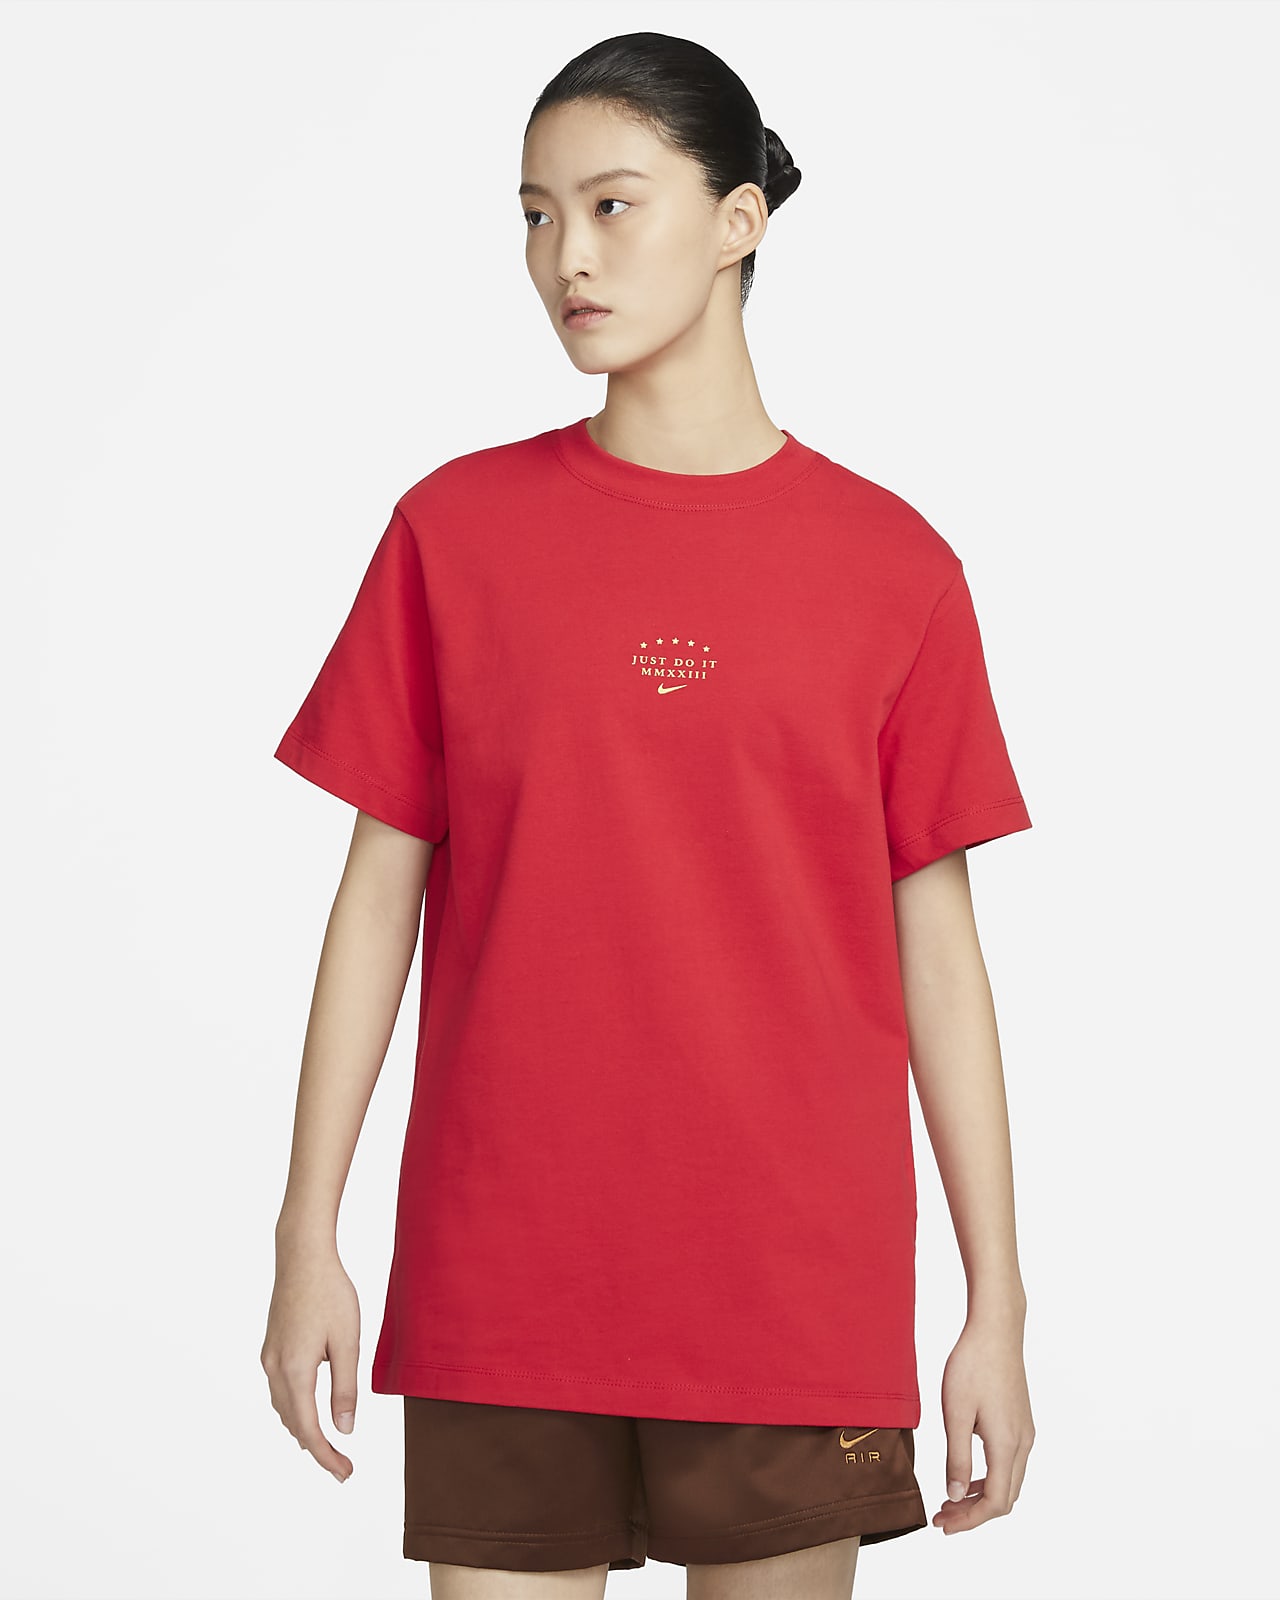 Nike Sportswear Women's Short-sleeve T-shirt